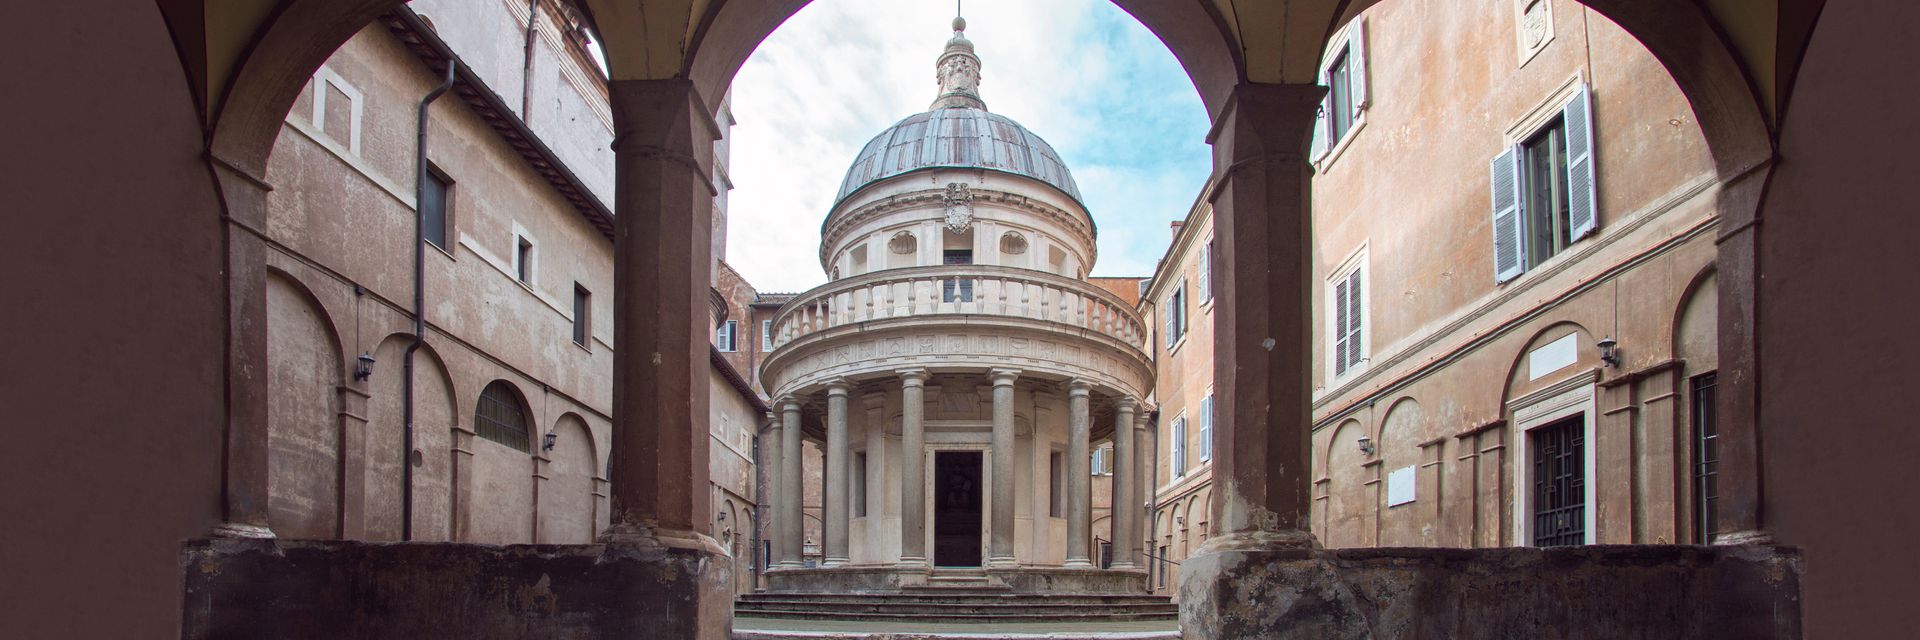 Reale Accademia di Spagna a Roma